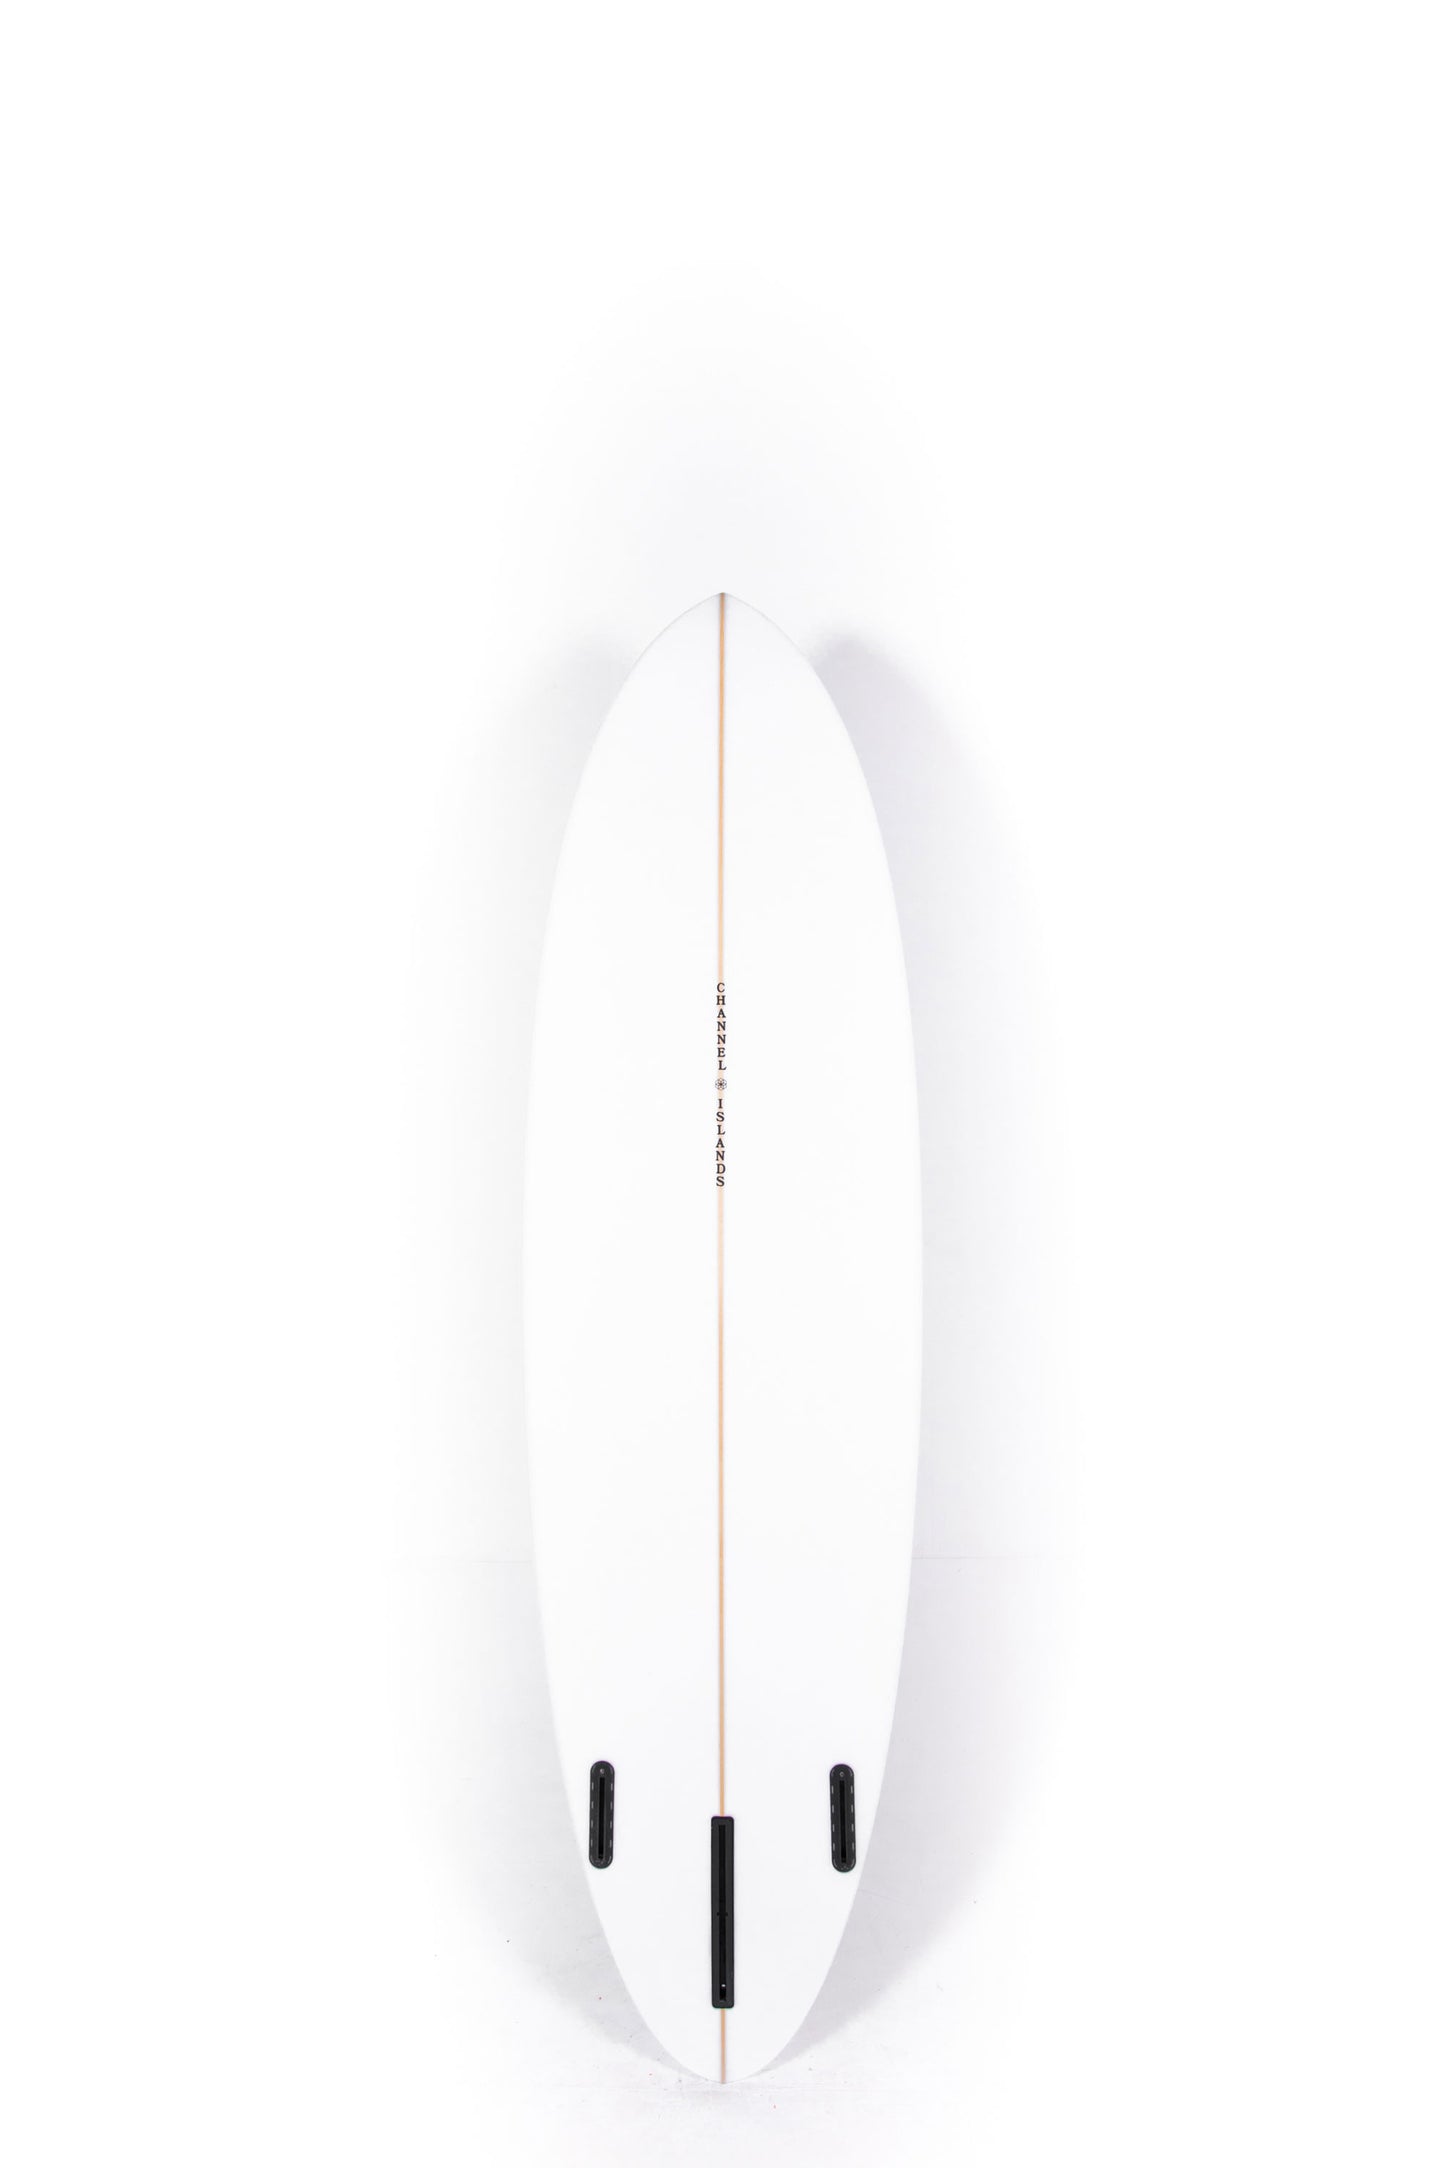 Pukas Surf Shop - Channel Islands - CI MID - 6'8" x 20 3/4 x 2 5/8 - 40,20L - CI32553